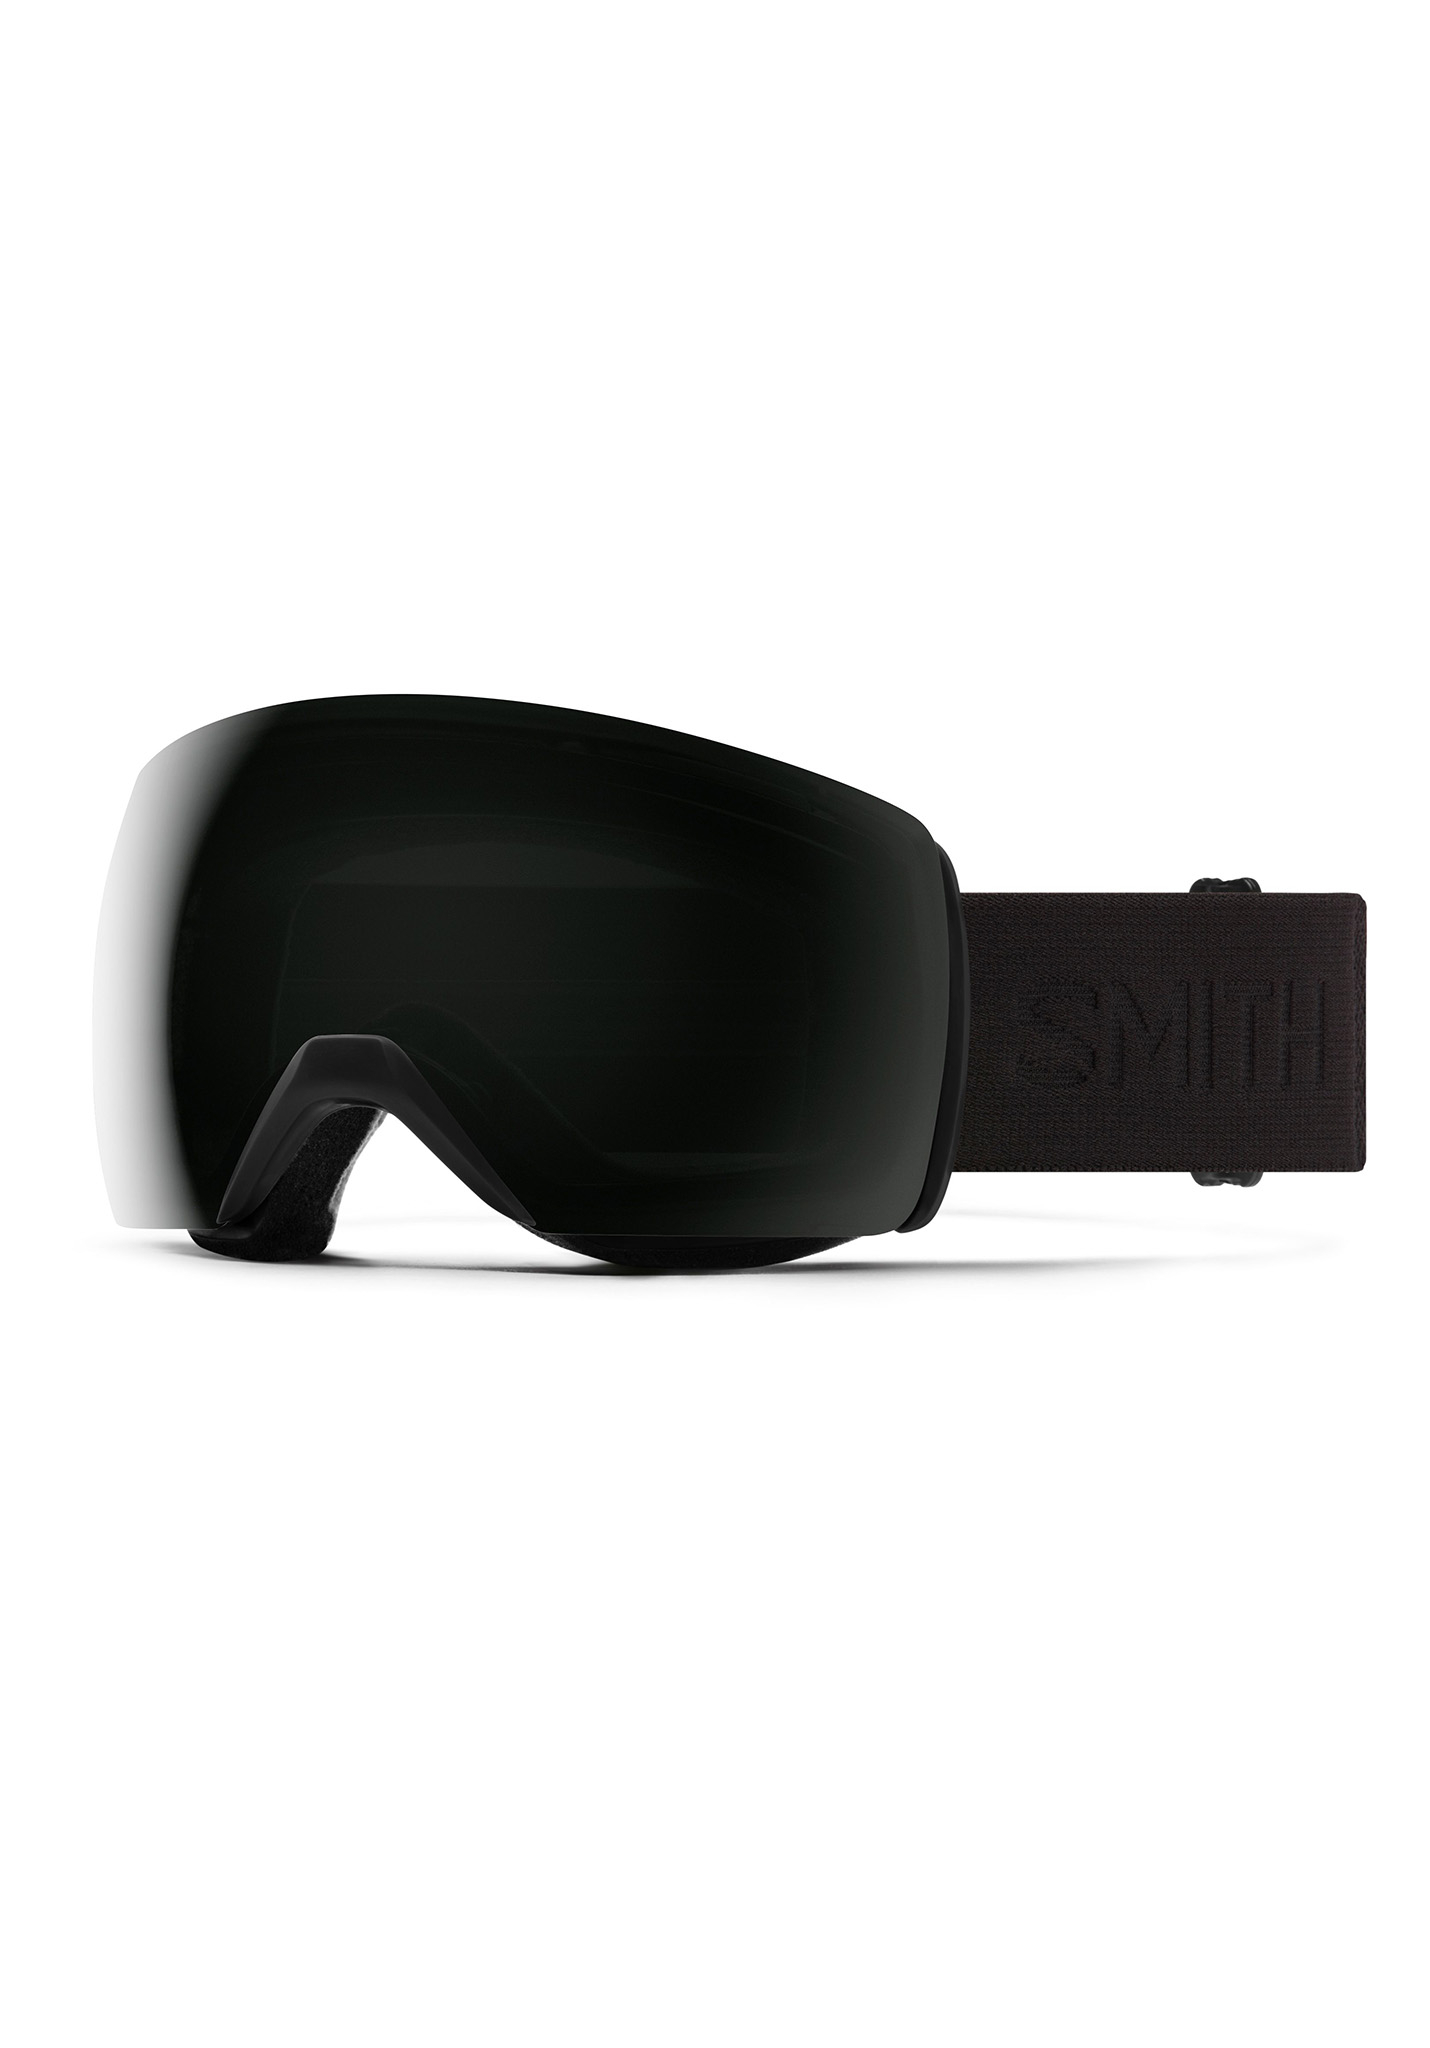 Smith Skyline XL Snowboardbrillen verdunkelung/sonne schwarz One Size